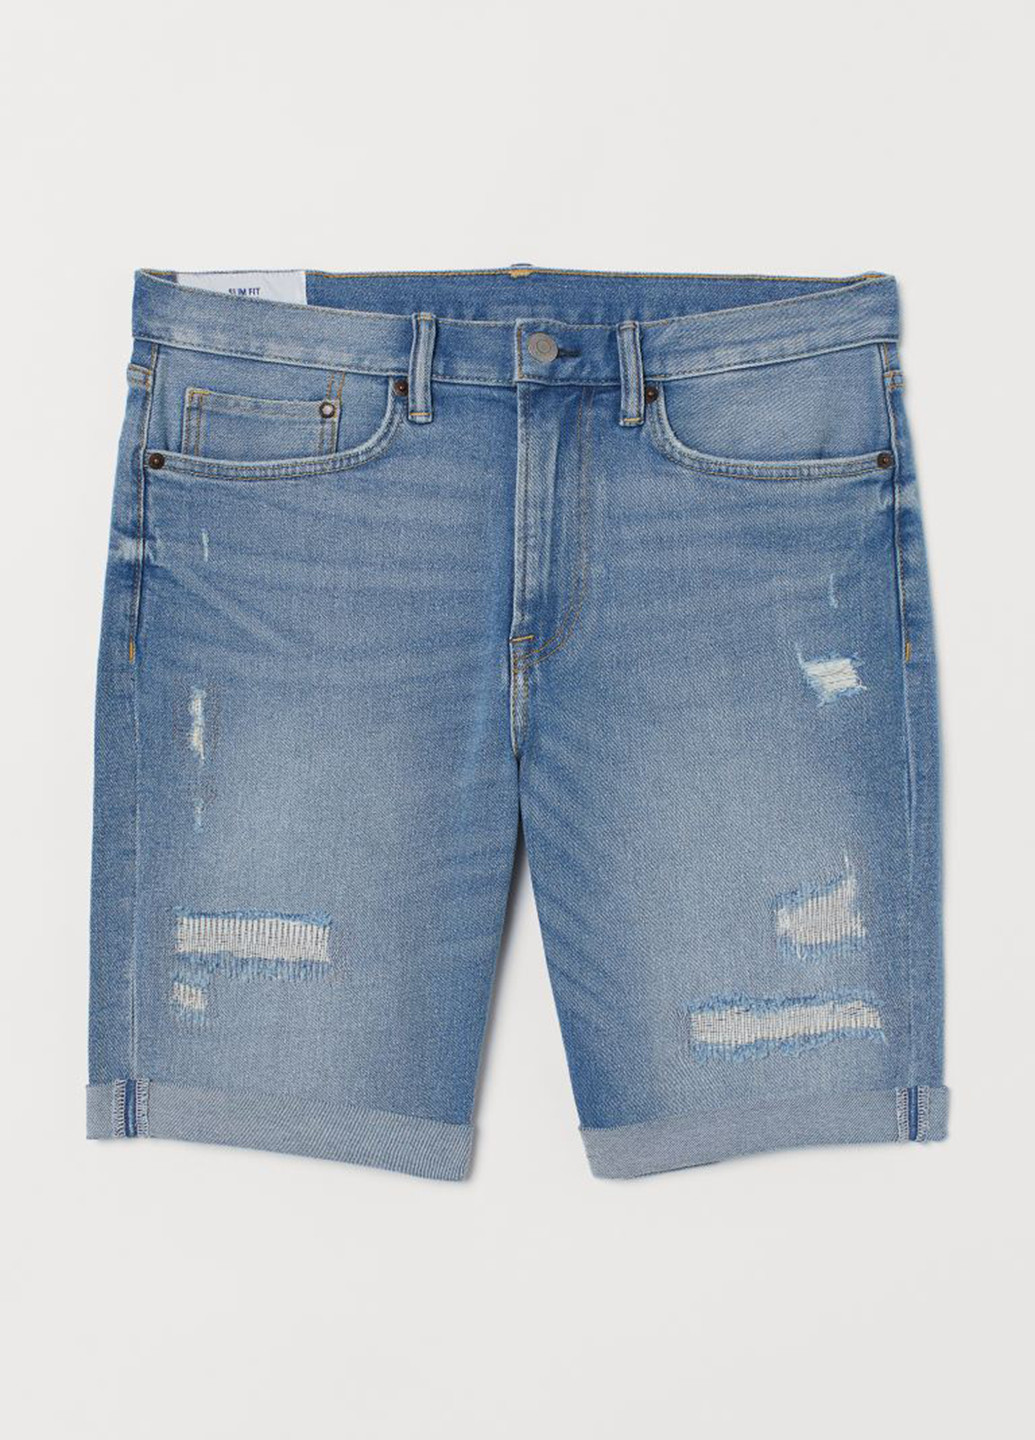 Шорты H&M однотонные тёмно-голубые джинсовые хлопок